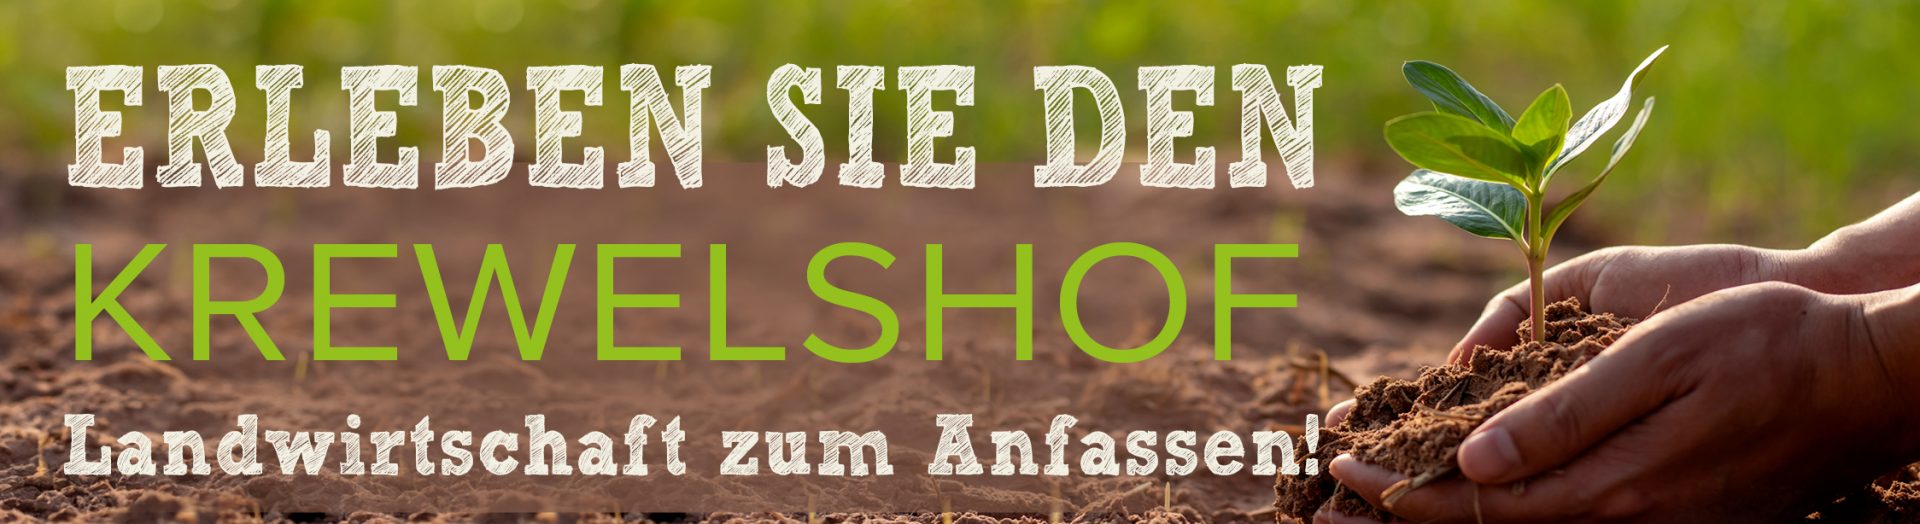 Landwirtschaft zum anfassen - krewelshof Eifel